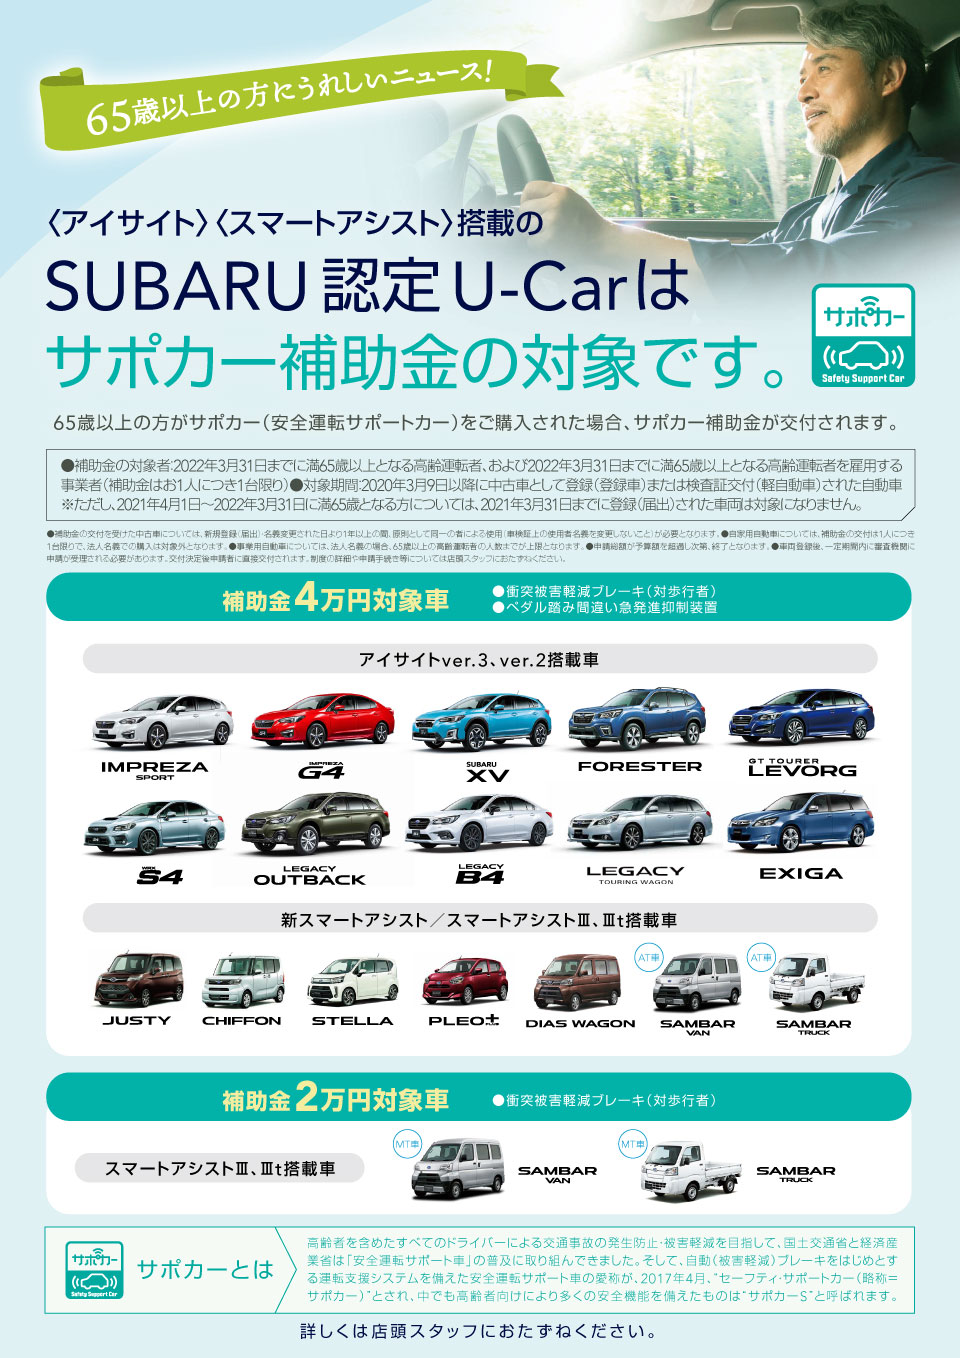 Subaru 認定 U Car 名古屋スバル自動車